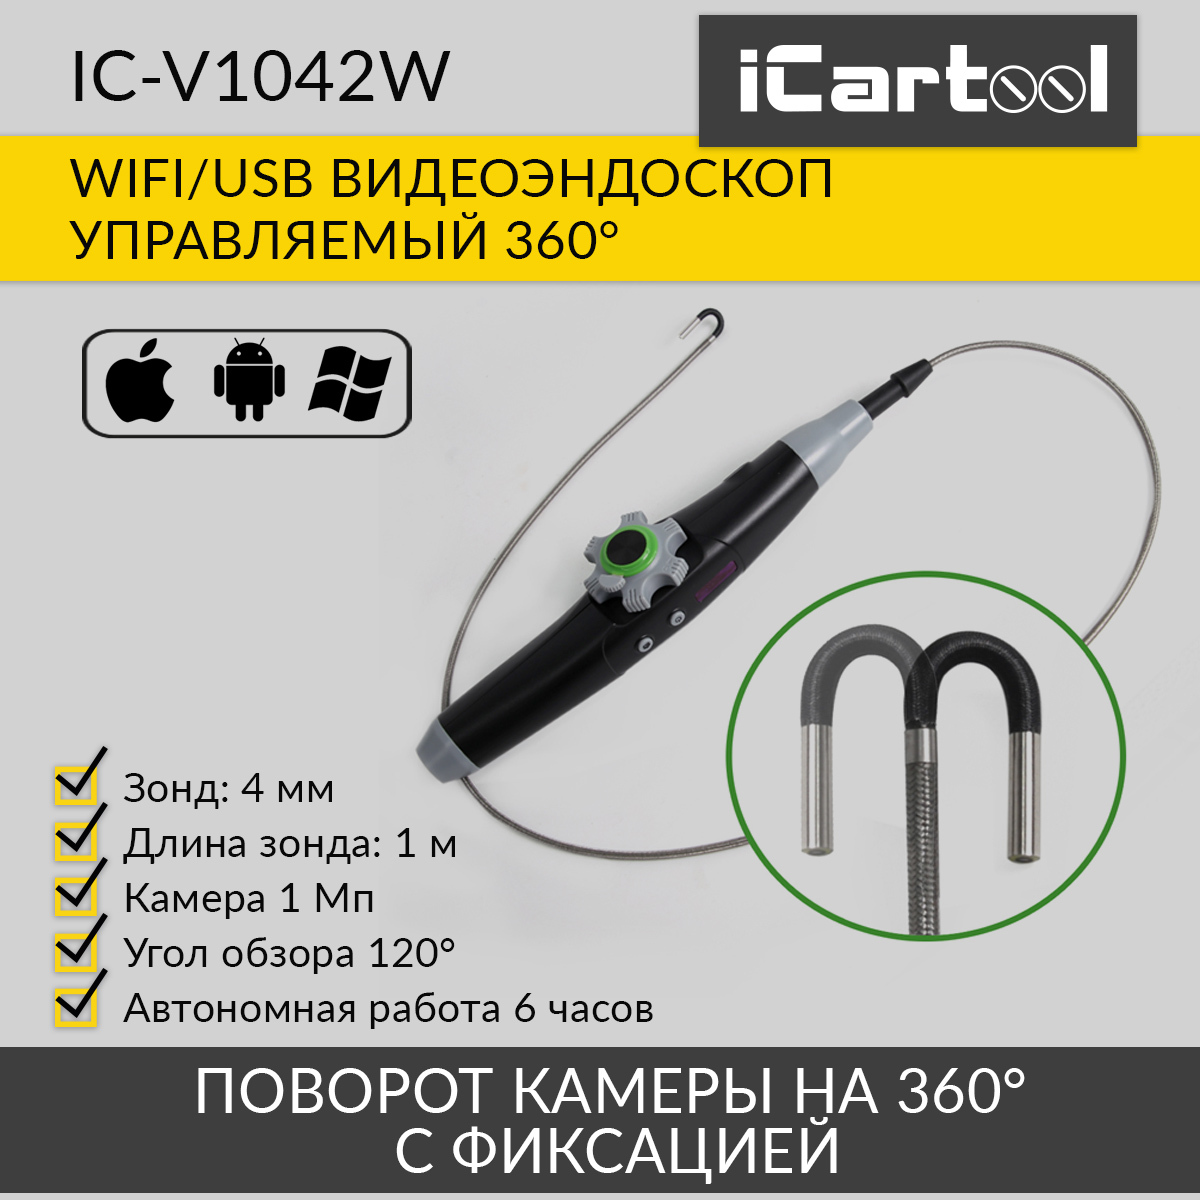 Видеоэндоскоп управляемый iCartool IC-V1042W WIFI/USB, 1Мп, 1168х720, 1м, 4мм зонд, 360° многофункциональное пуско зарядное устройство для автомобиля icartool